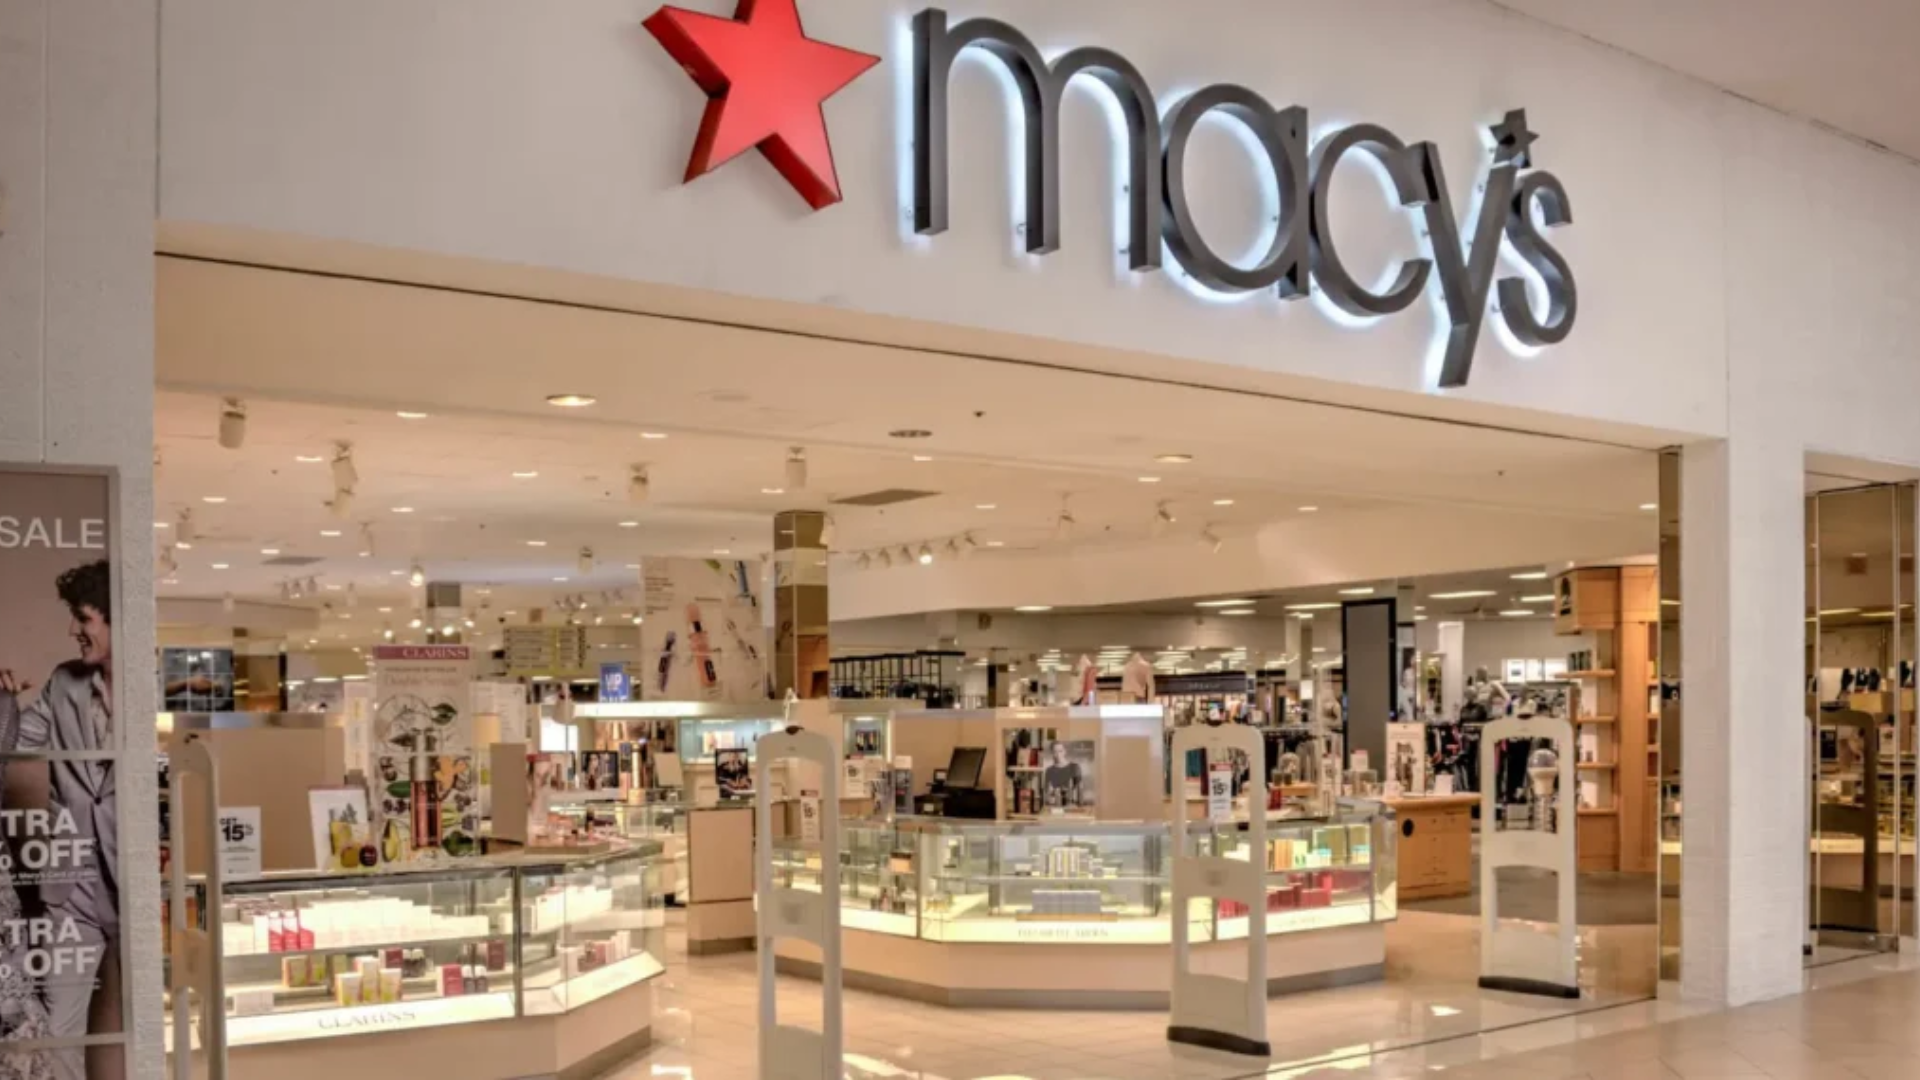 Oferta millonaria: Macy’s recibe propuesta de compra por $6,600 millones de dólares